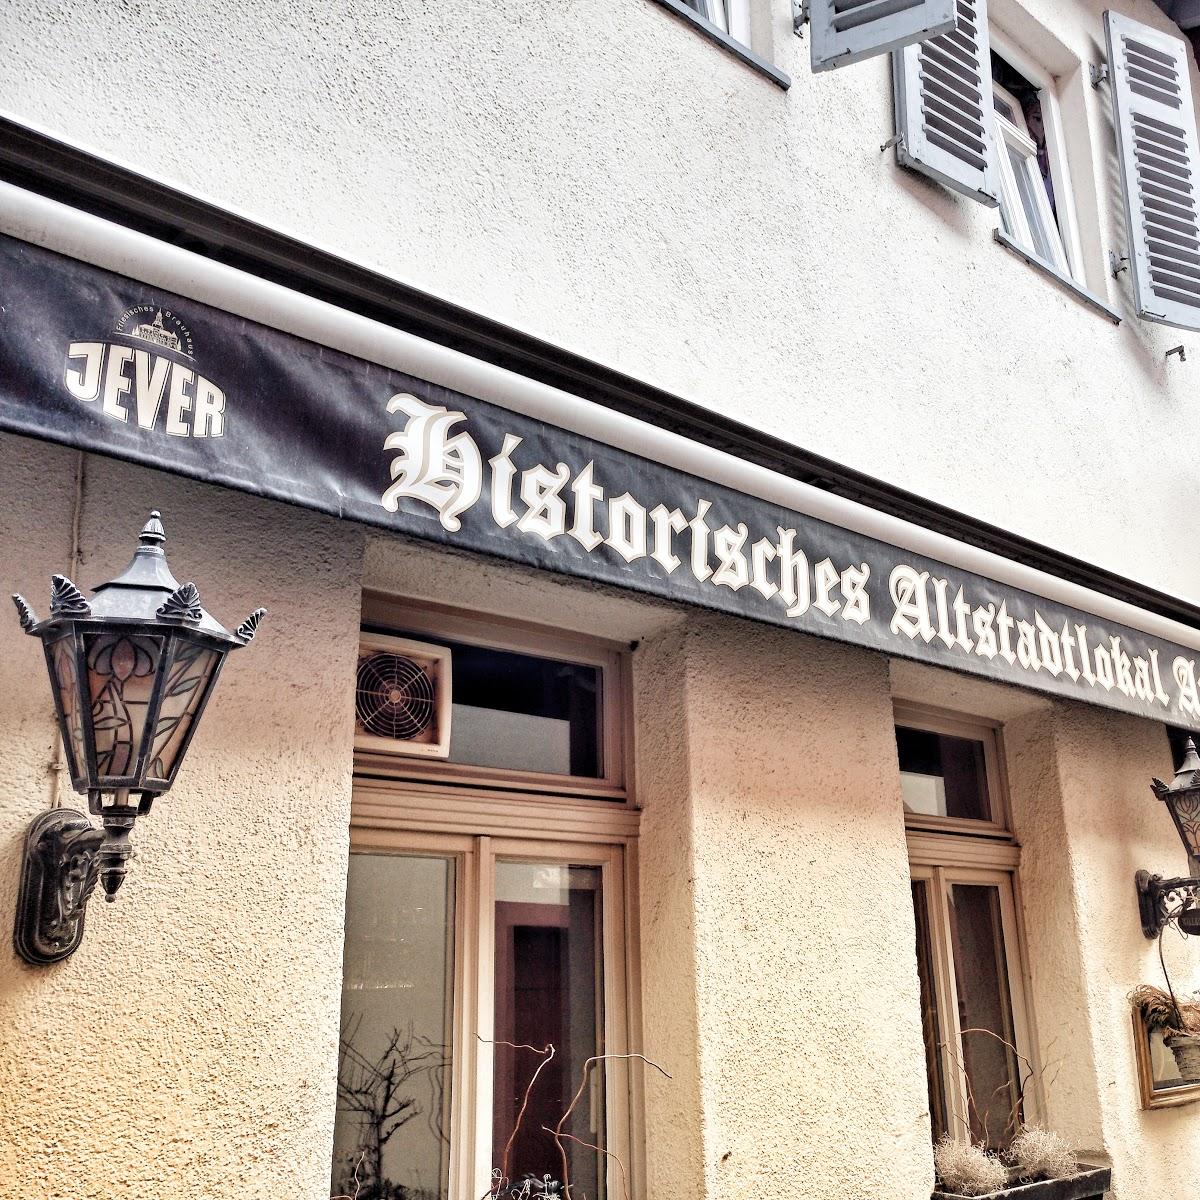 Restaurant "Historisches Altstadtlokal Anno 1525" in Frankfurt am Main